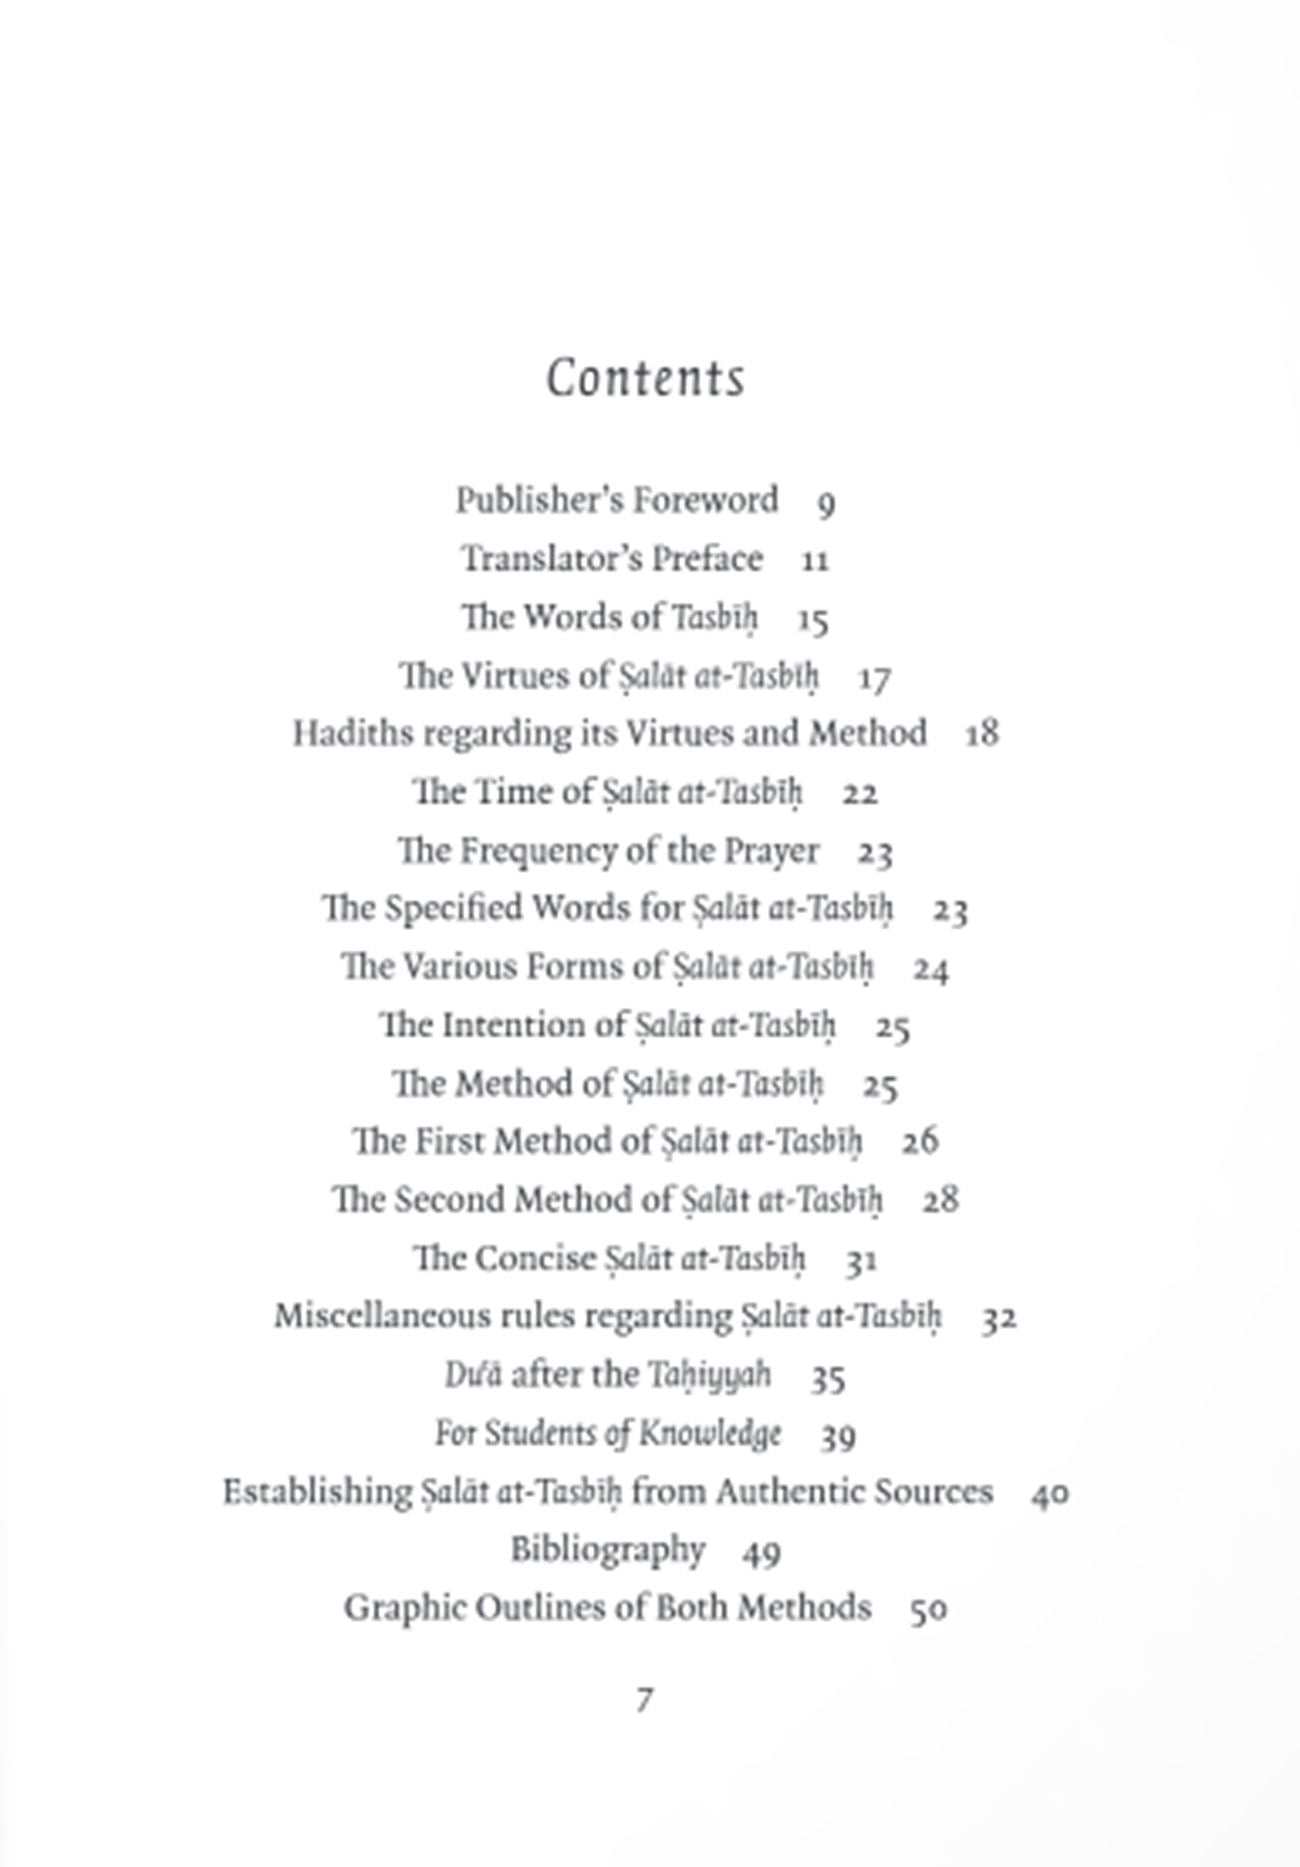 The Virtues and Rulings of Salat at-Tasbih: A Translation of Salat at-Tasbih ke Fada'il Aur Mas'ail